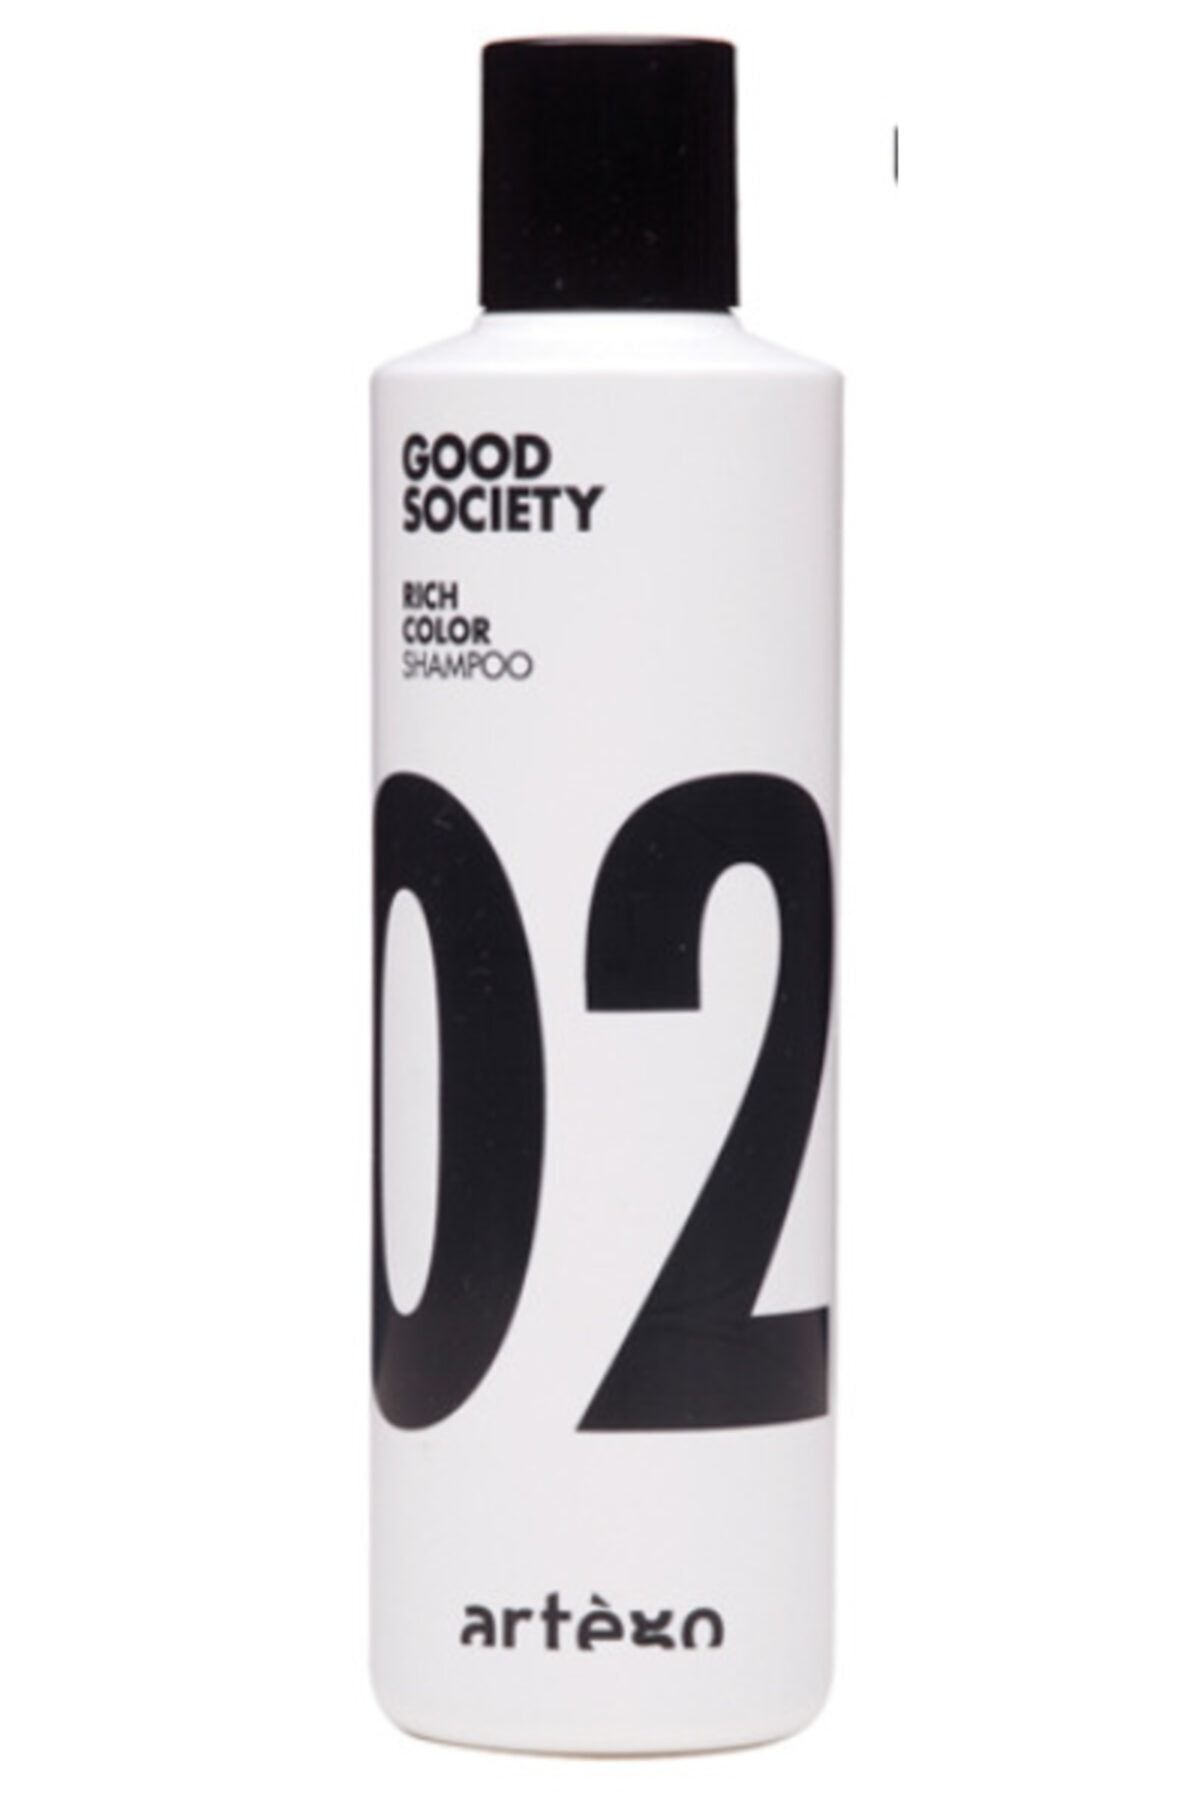 Artego Good Society 02 Rıch Color Shampoo 250 ml